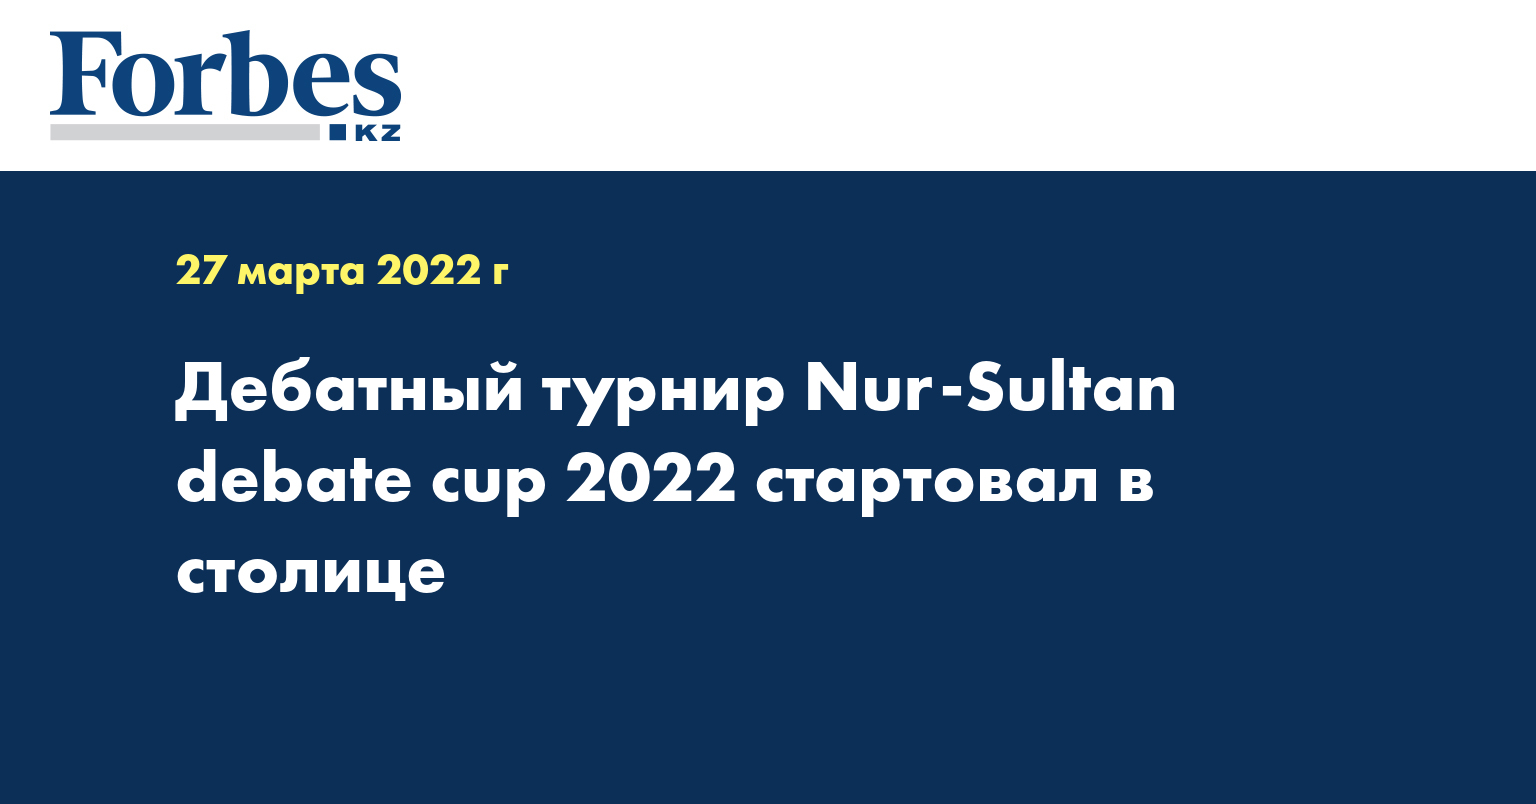 Дебатный турнир Nur-Sultan debate cup 2022 стартовал в столице